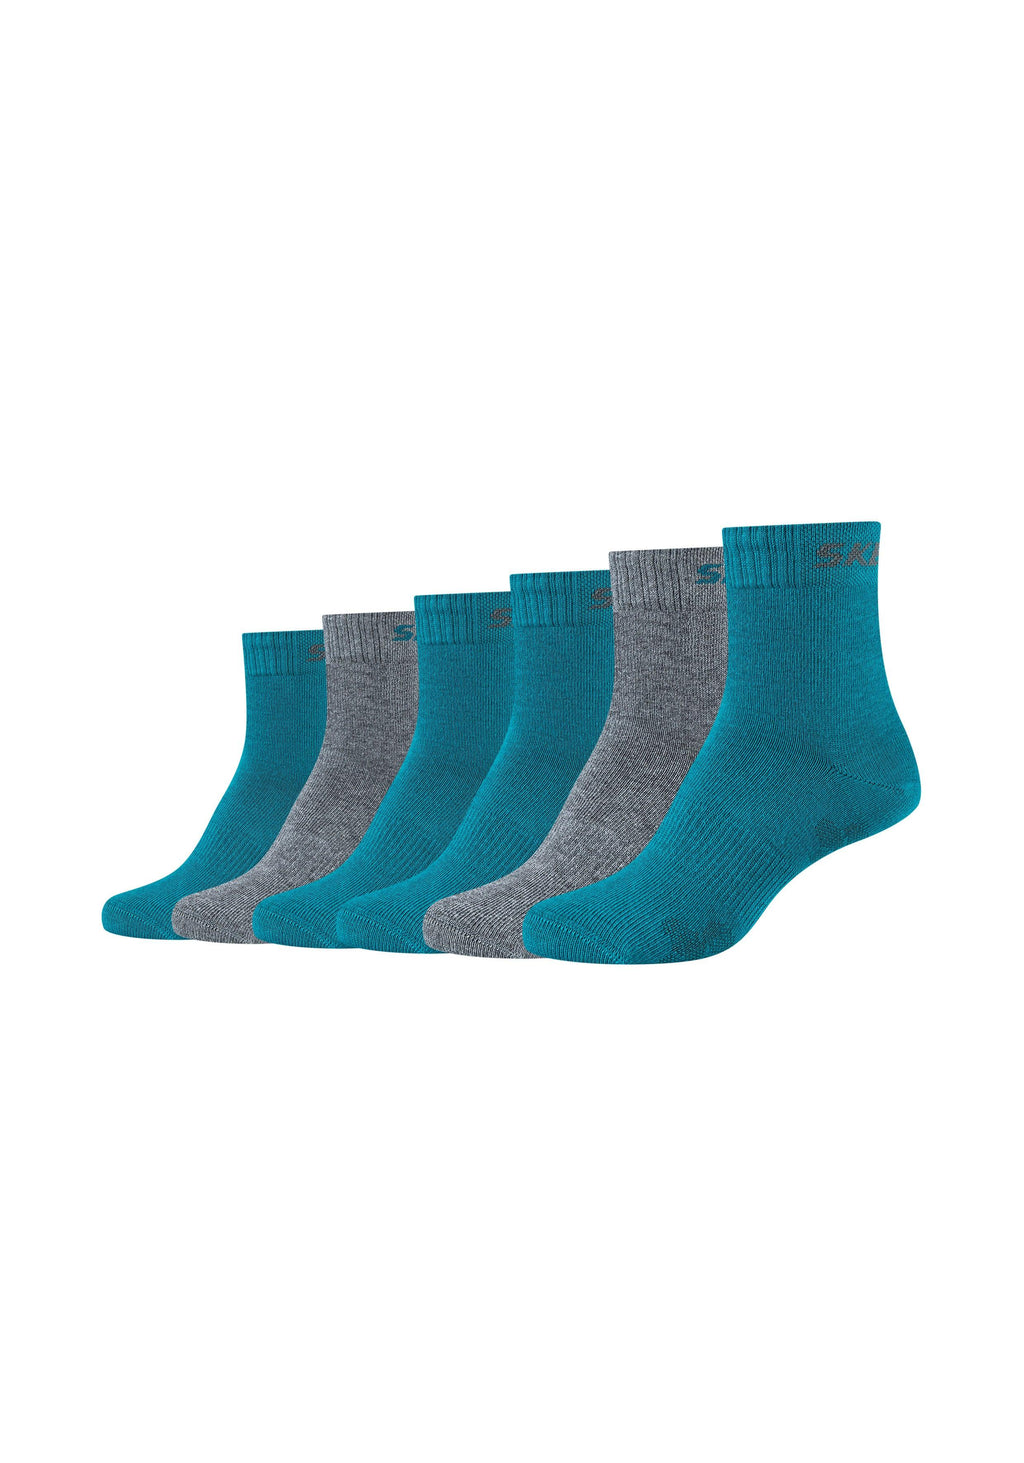 Kinder Socken Mesh Ventilation 6er ONSKINERY Pack –